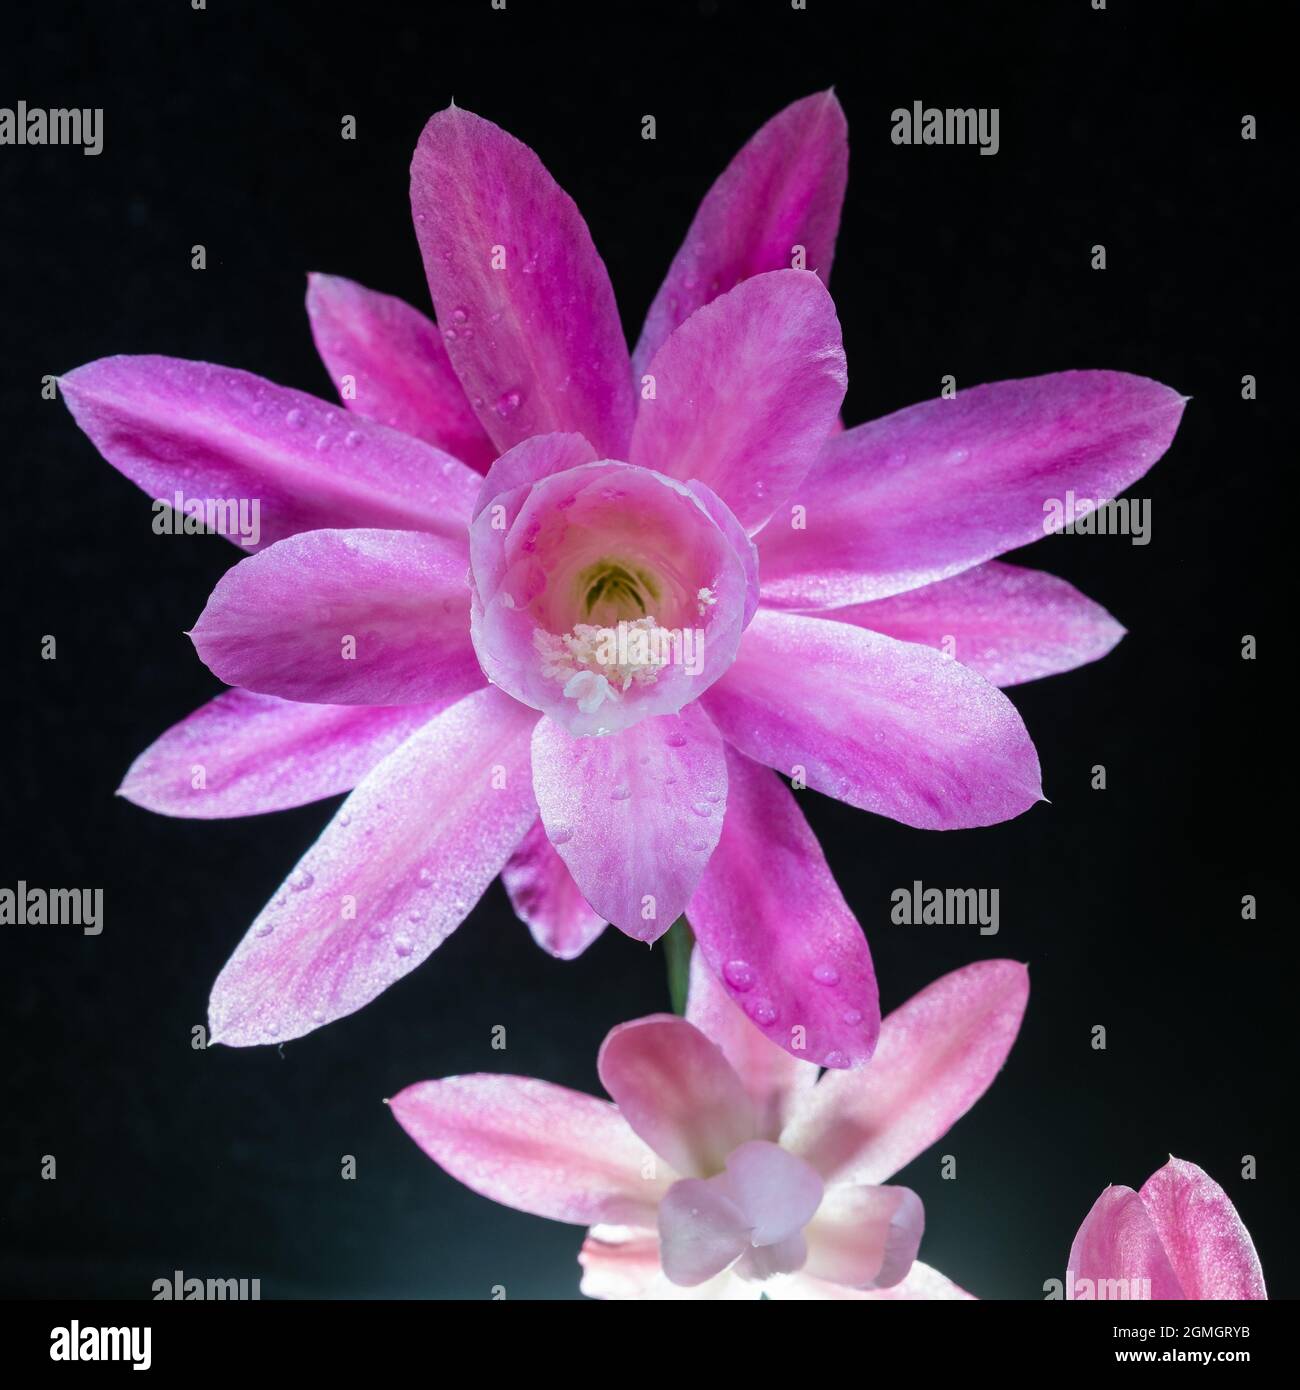 Amazing Blossom of Epiphyllum hybrid Stock Photo